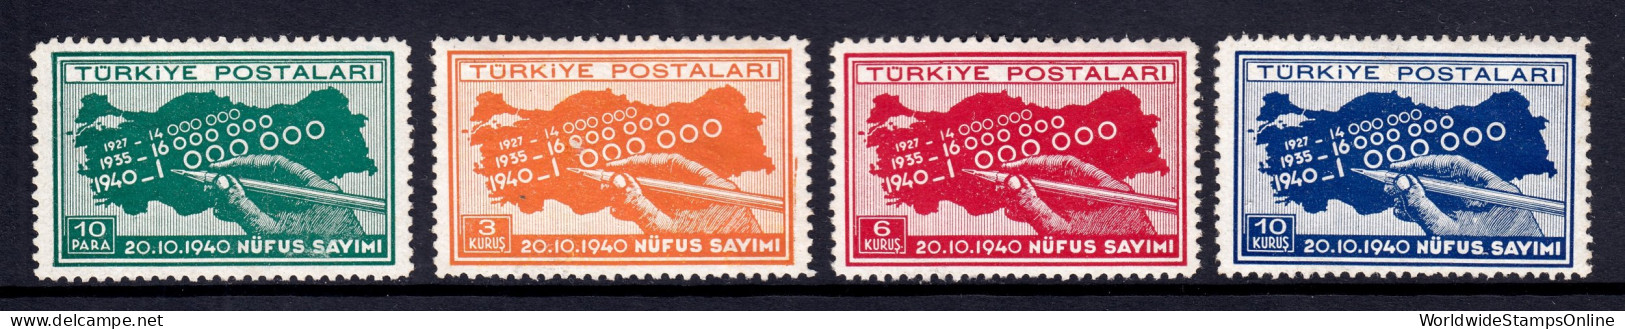 Turkey - Scott #851-854 - MH - SCV $5.50 - Neufs